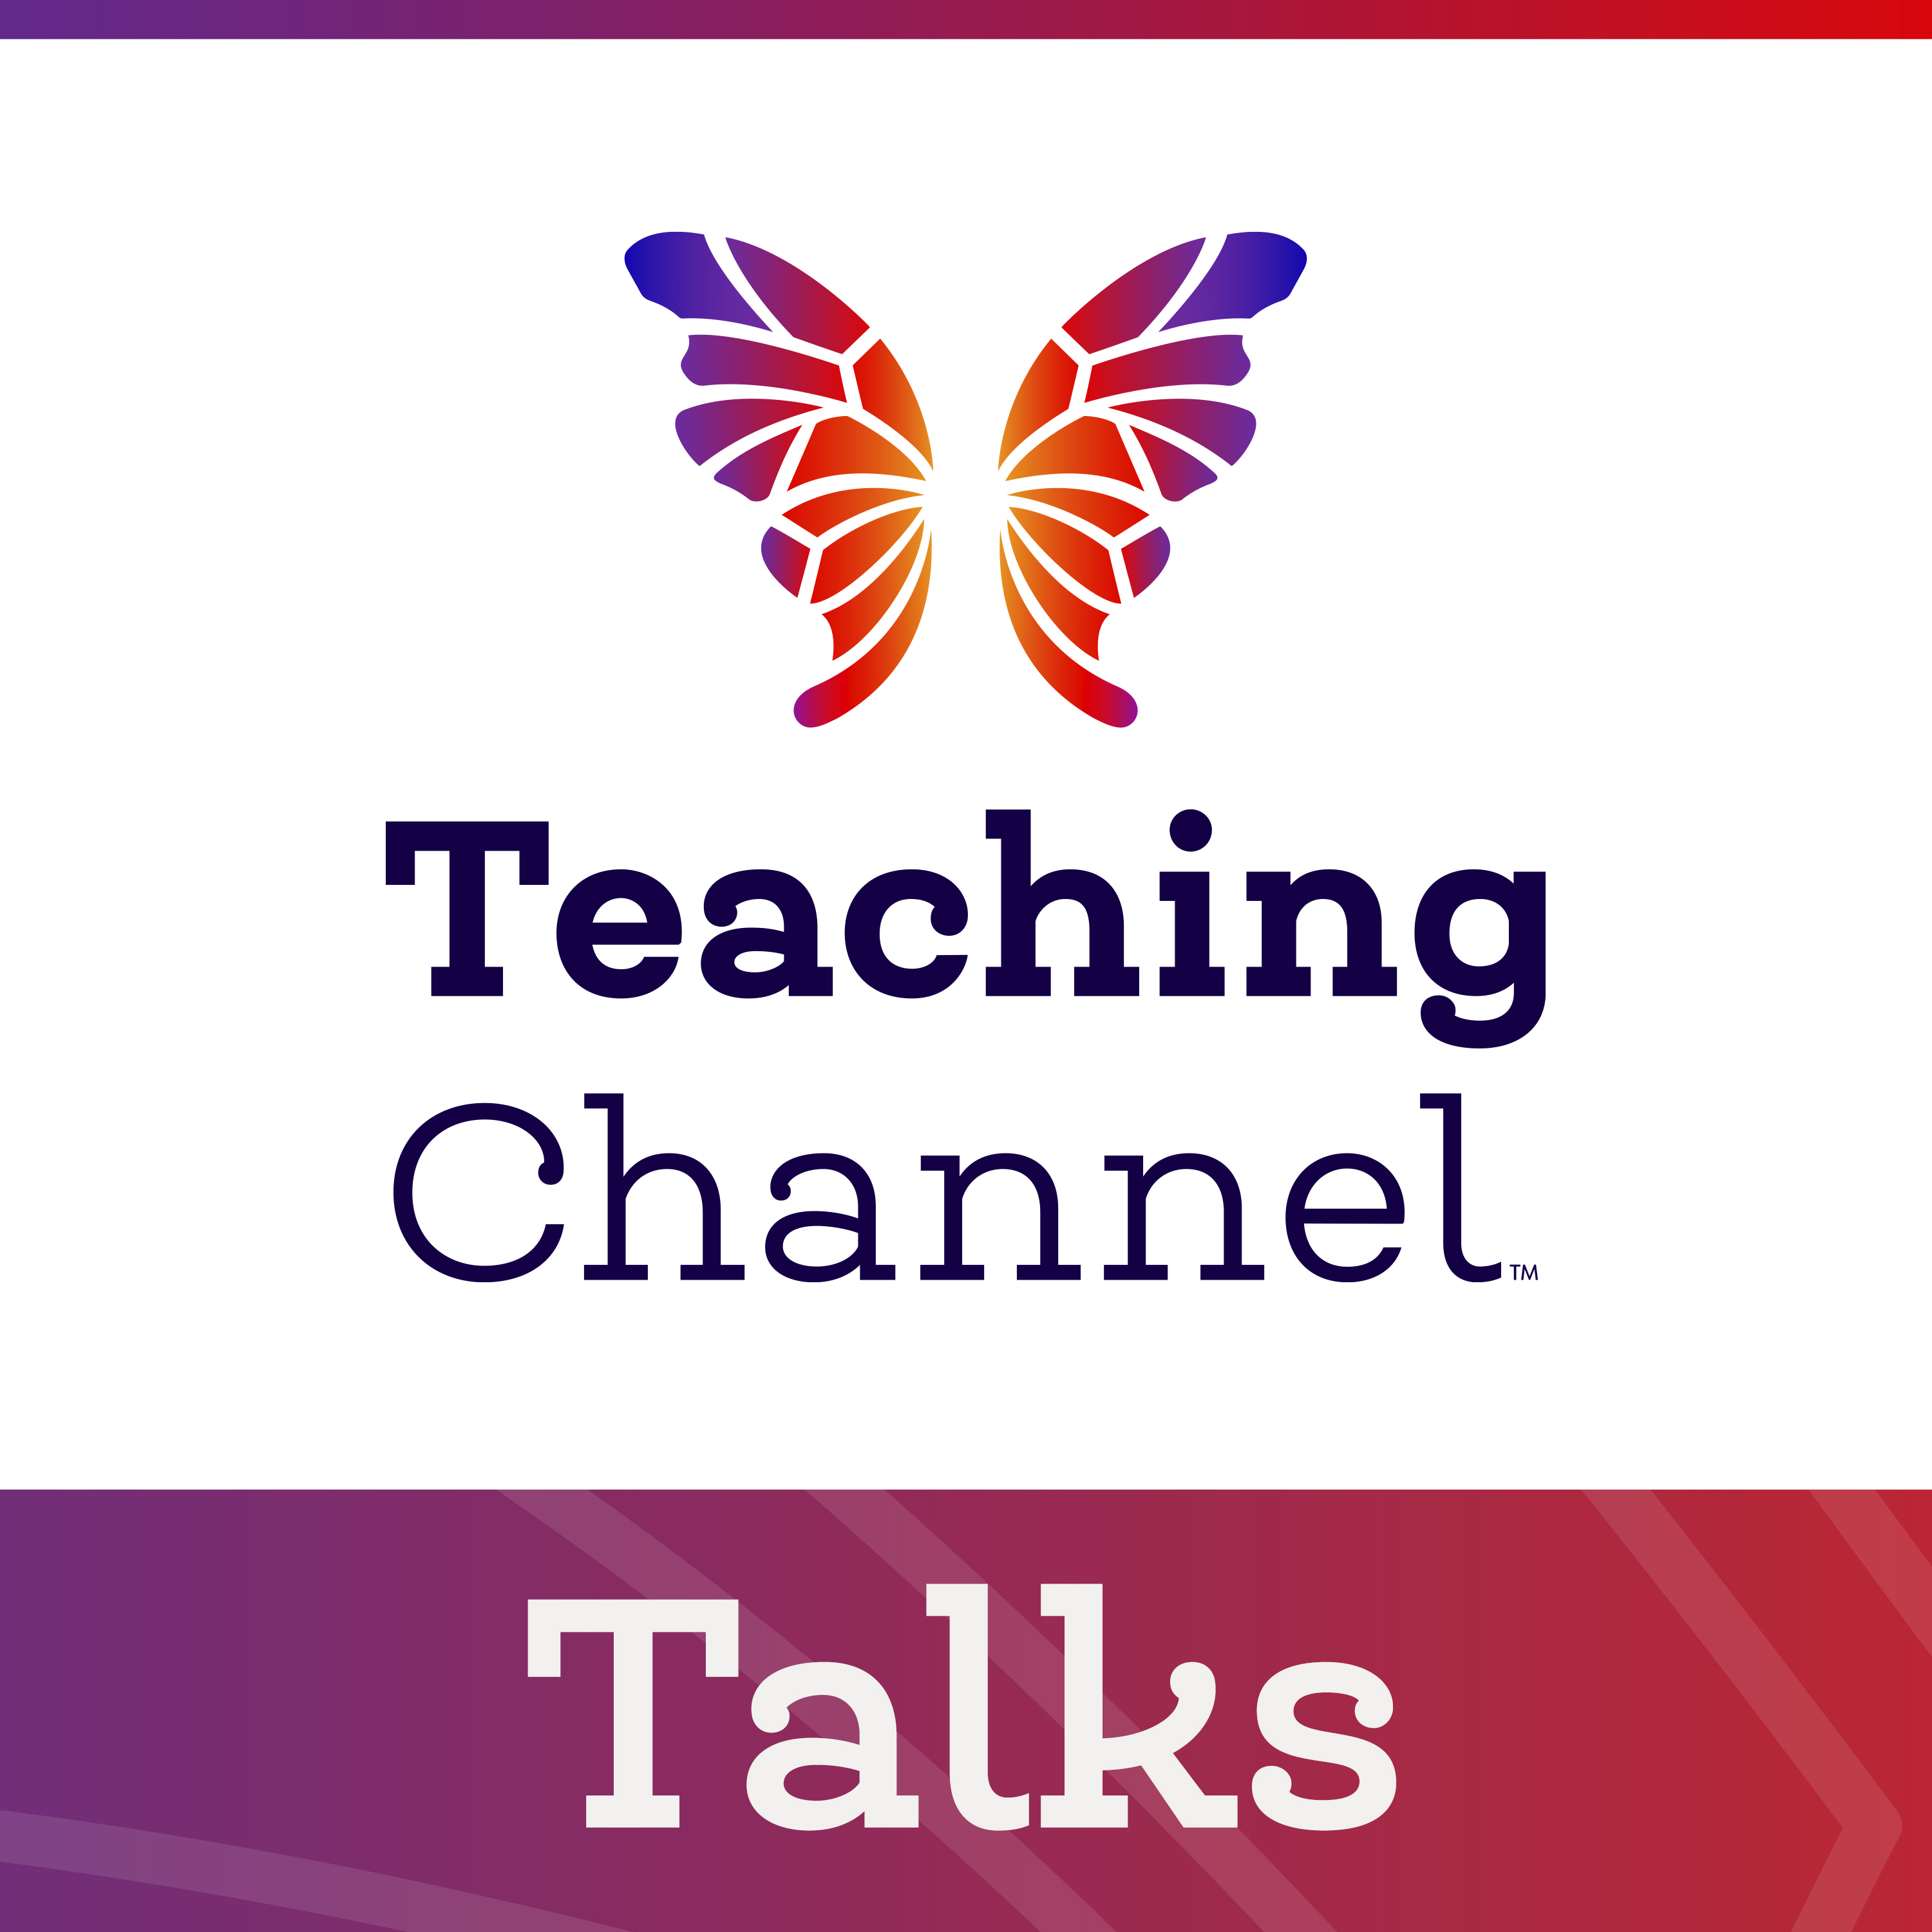 Artwork for Teaching Channel Talks